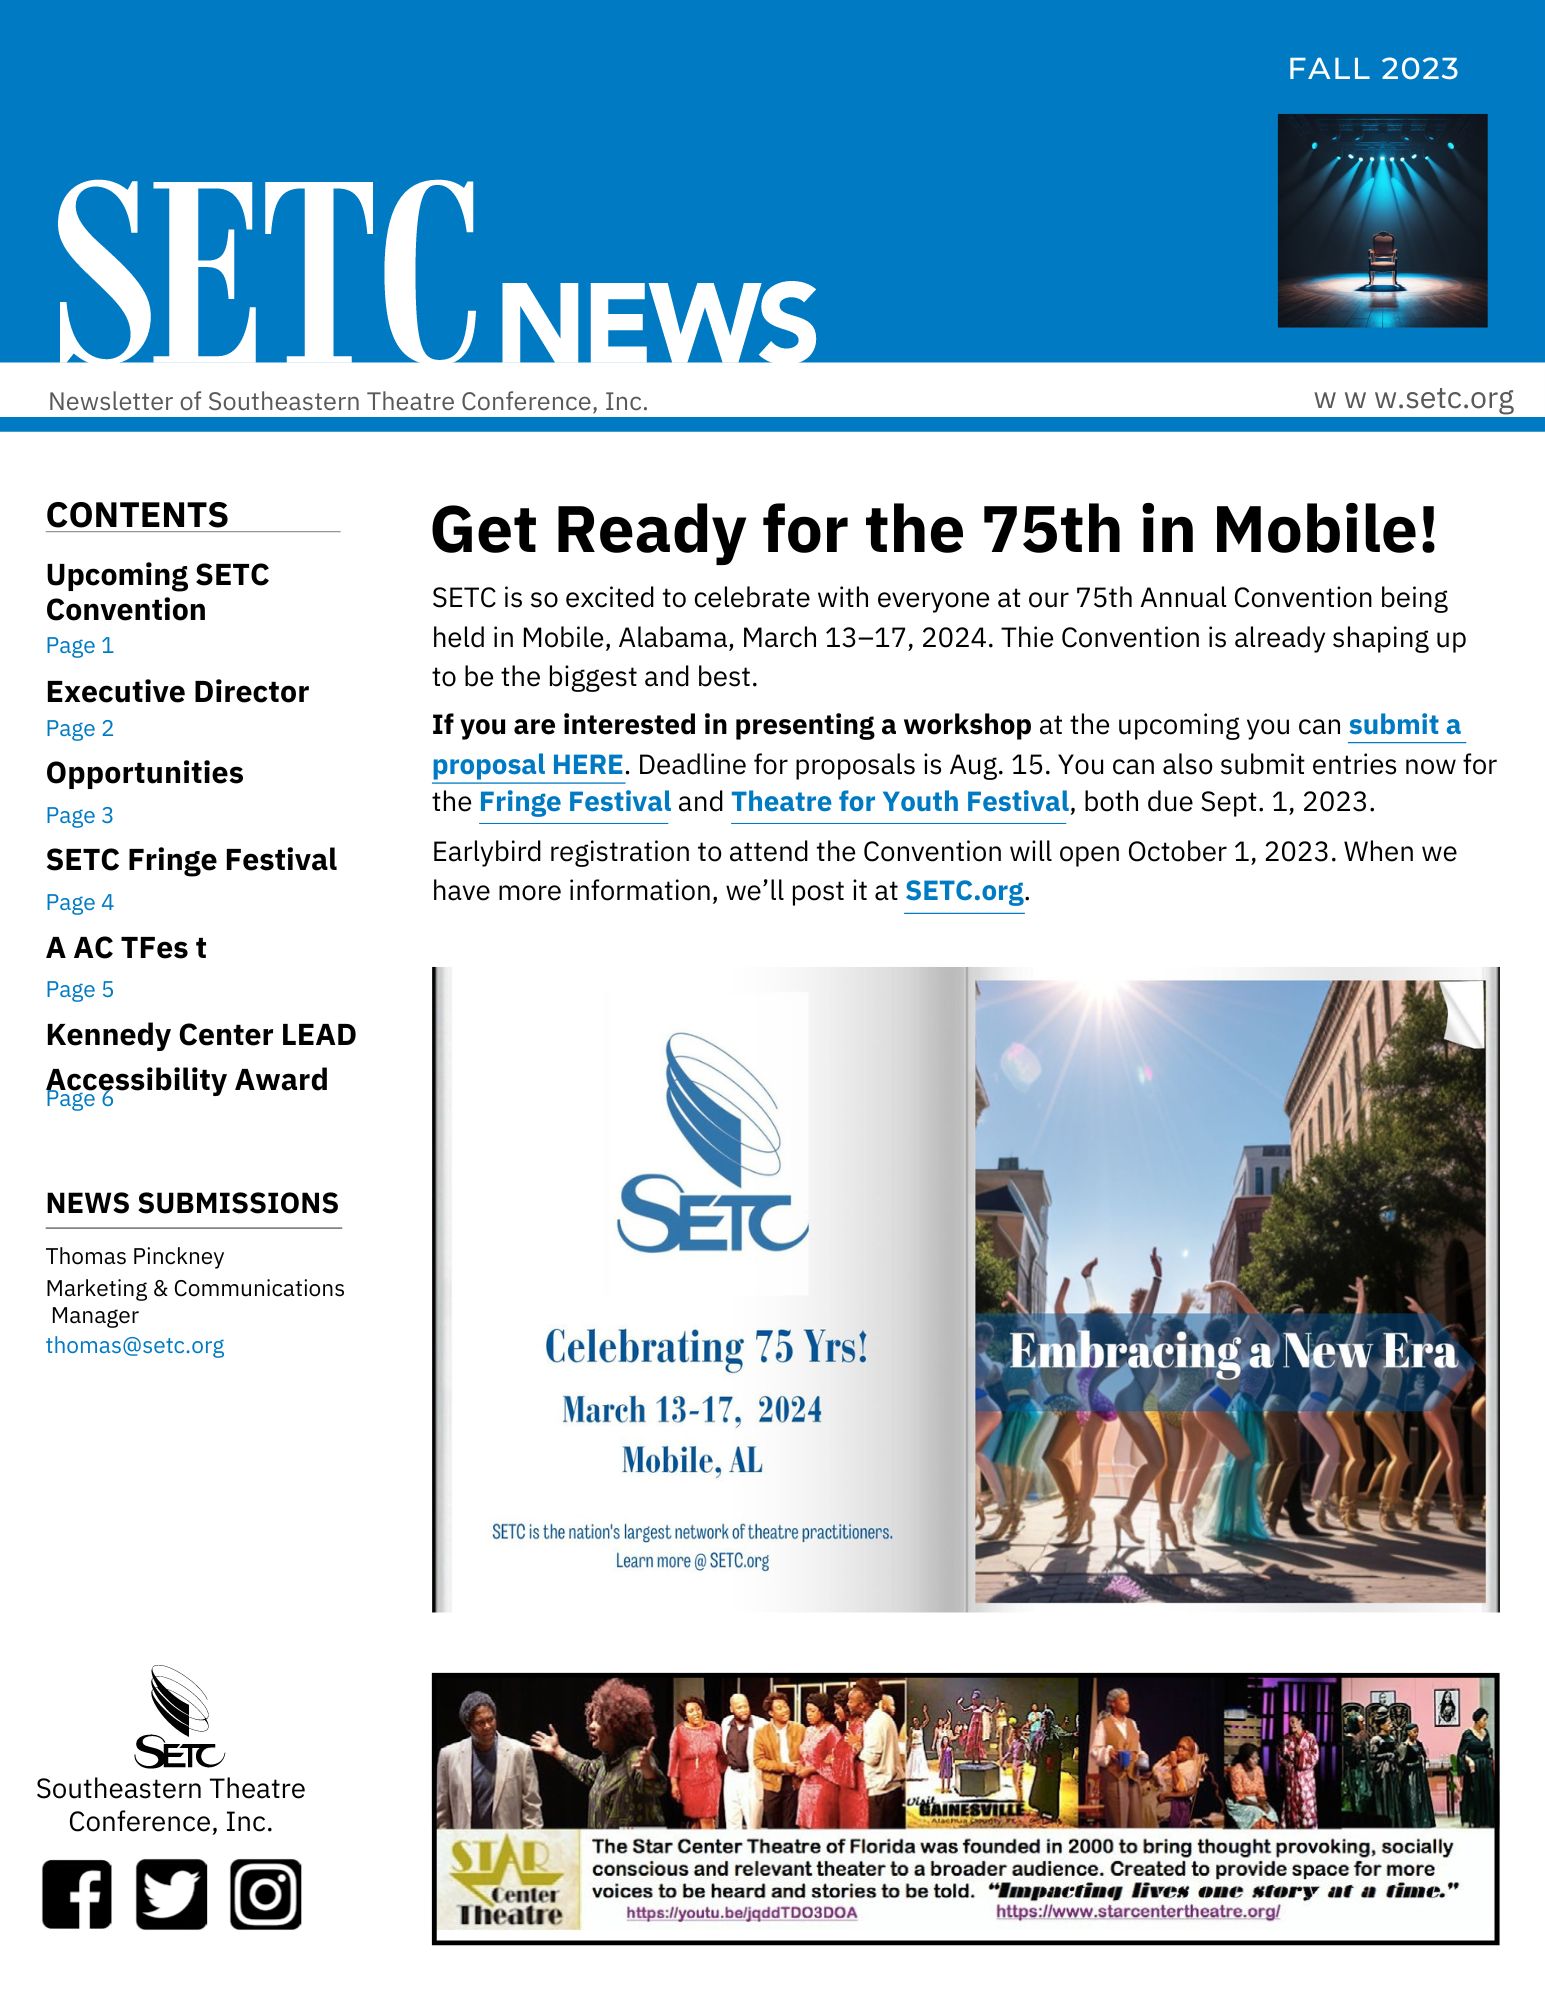 SETC News FALL 2023 cover